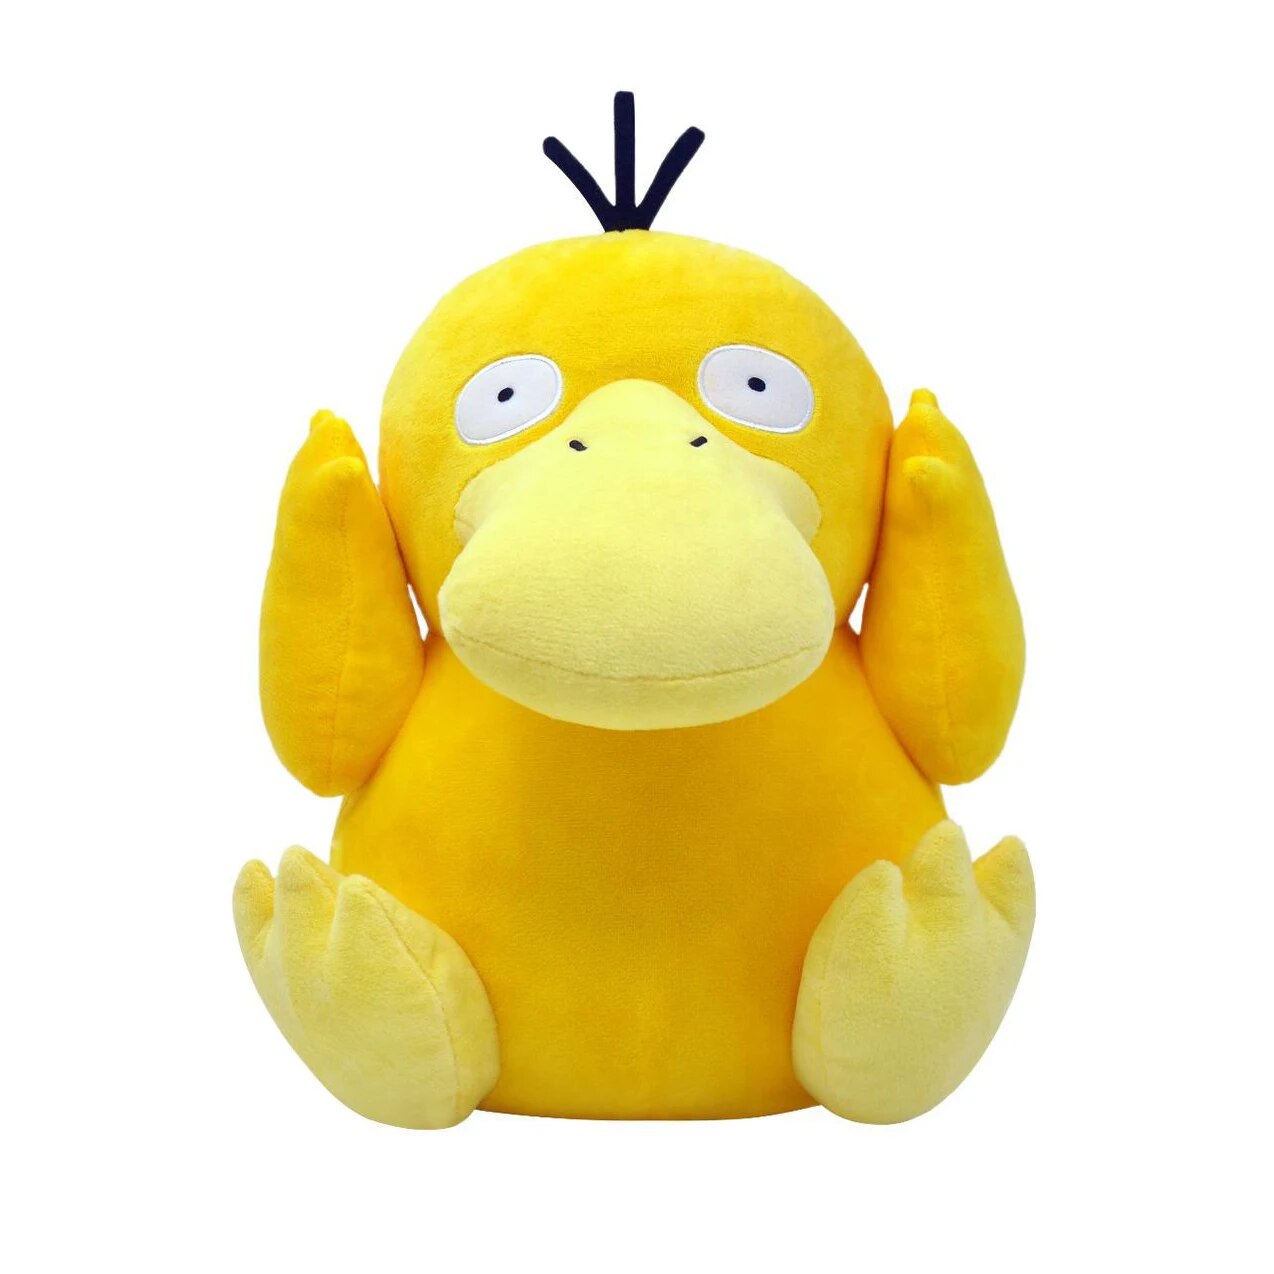 Psyduck Pokemon Plush Toy Gapo Goods